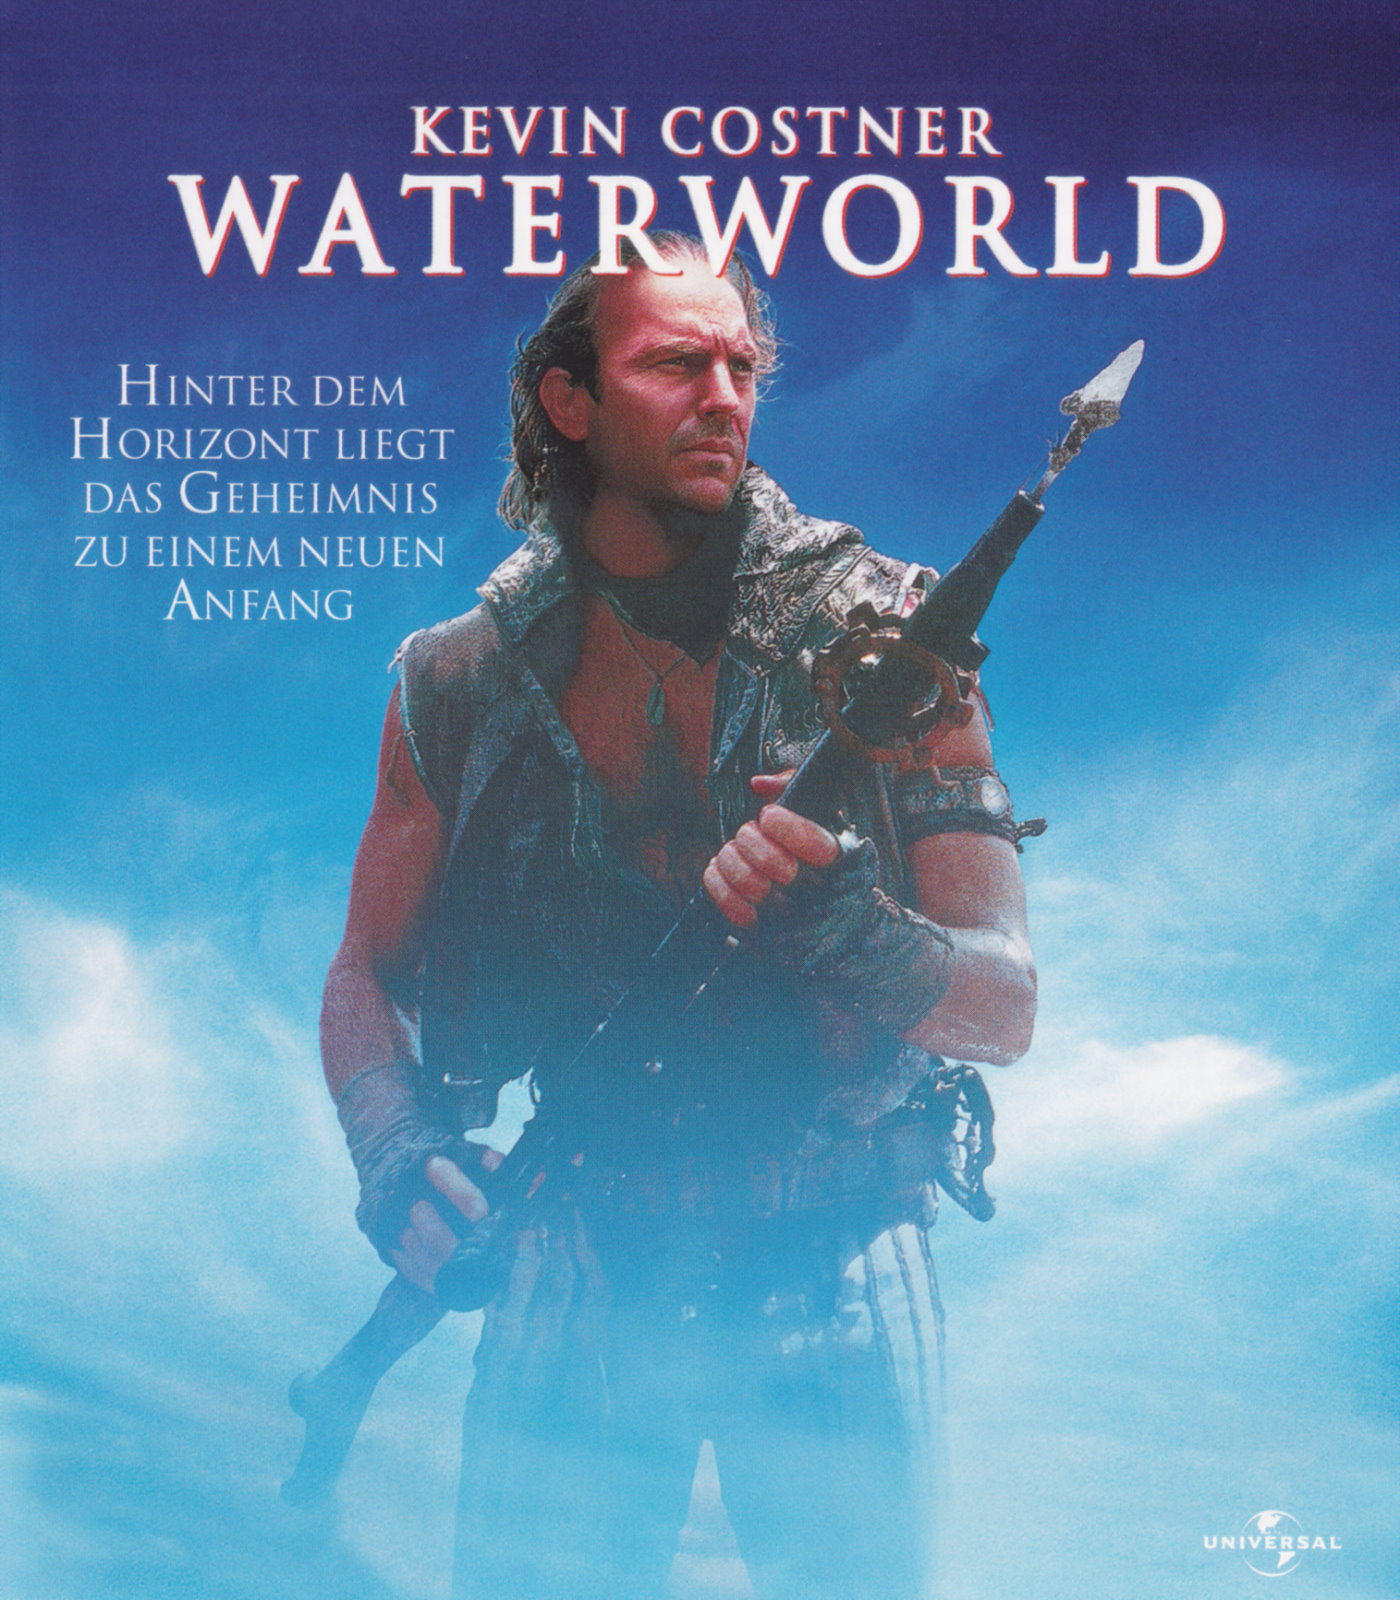 Cover - Waterworld.jpg